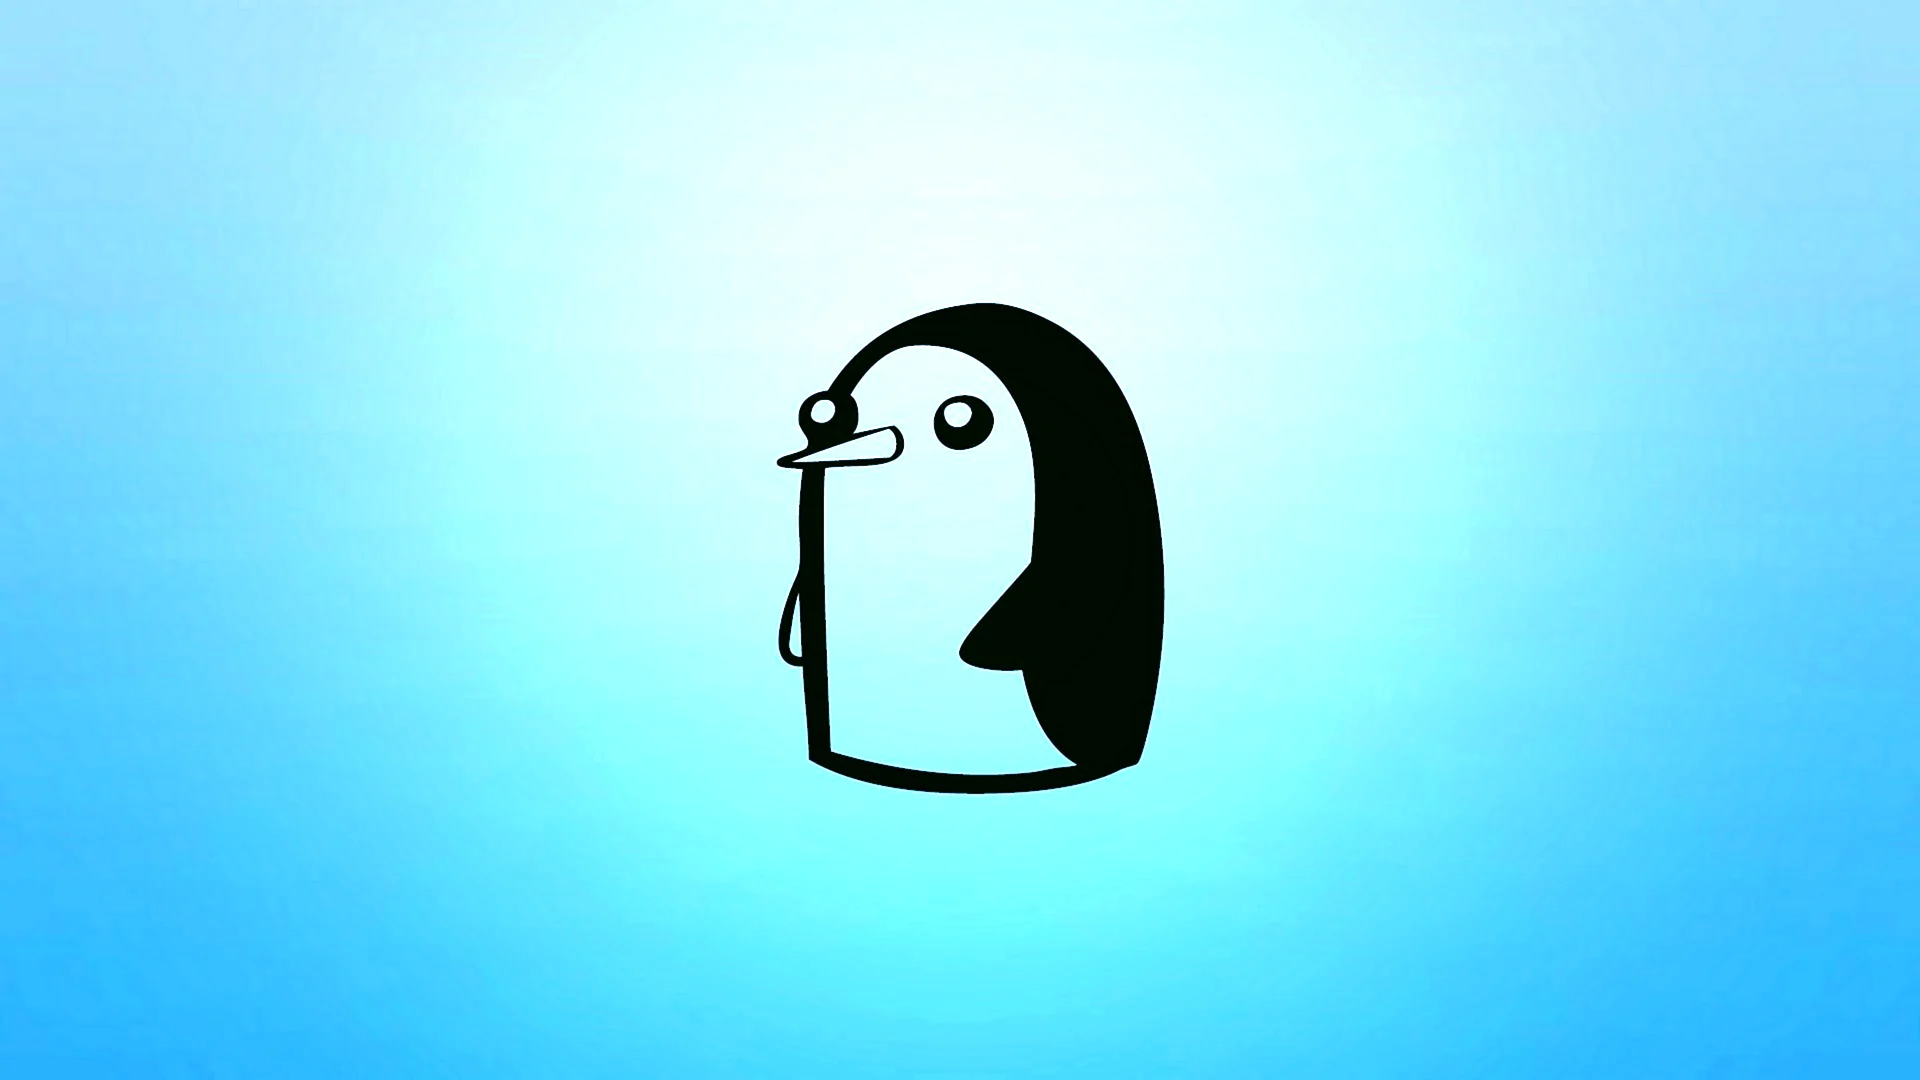 Пингвин адвенчер тайм